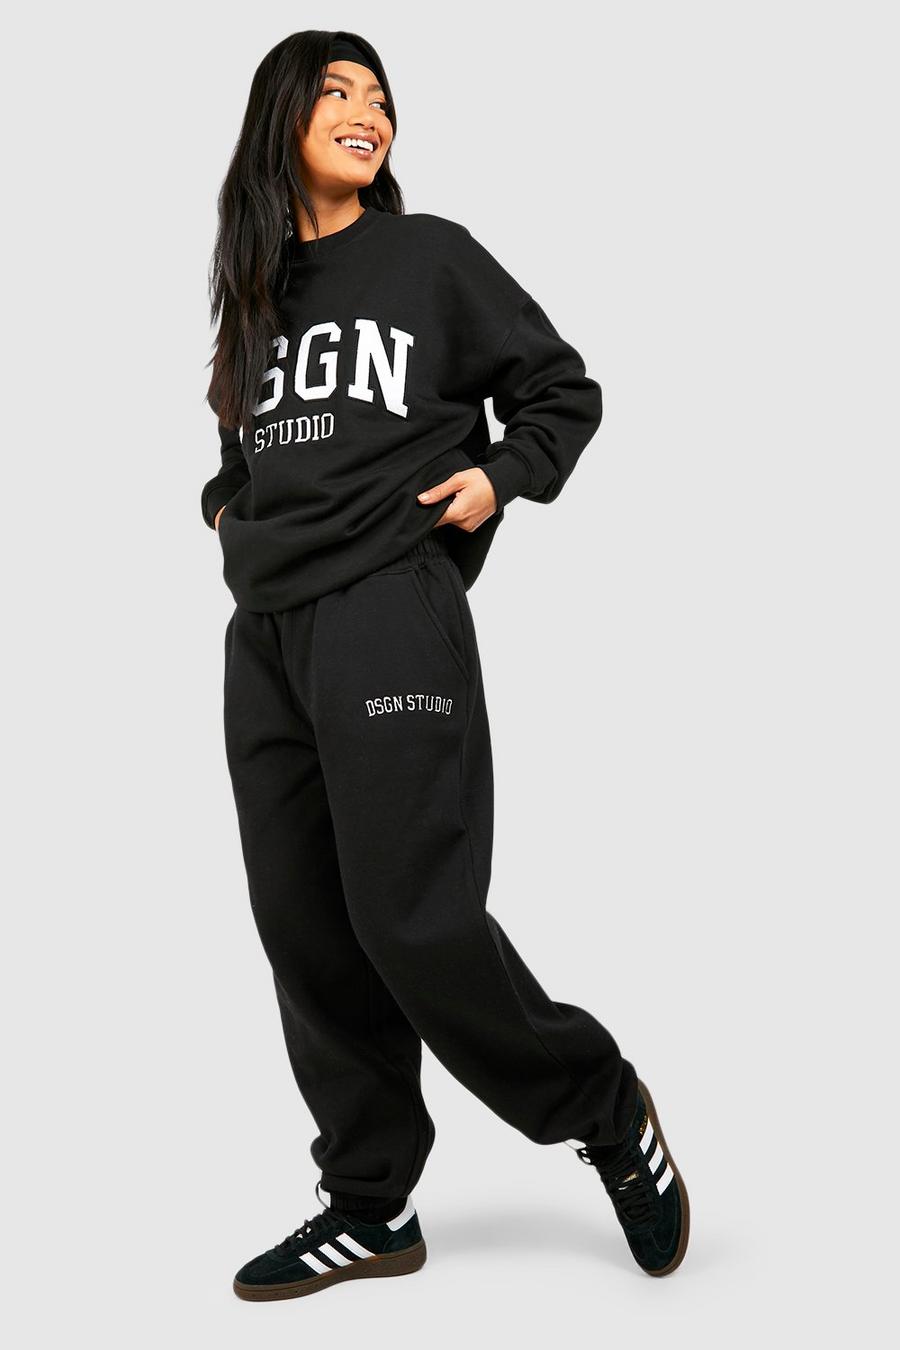 Pantaloni tuta oversize Dsgn Studio con applique, Black